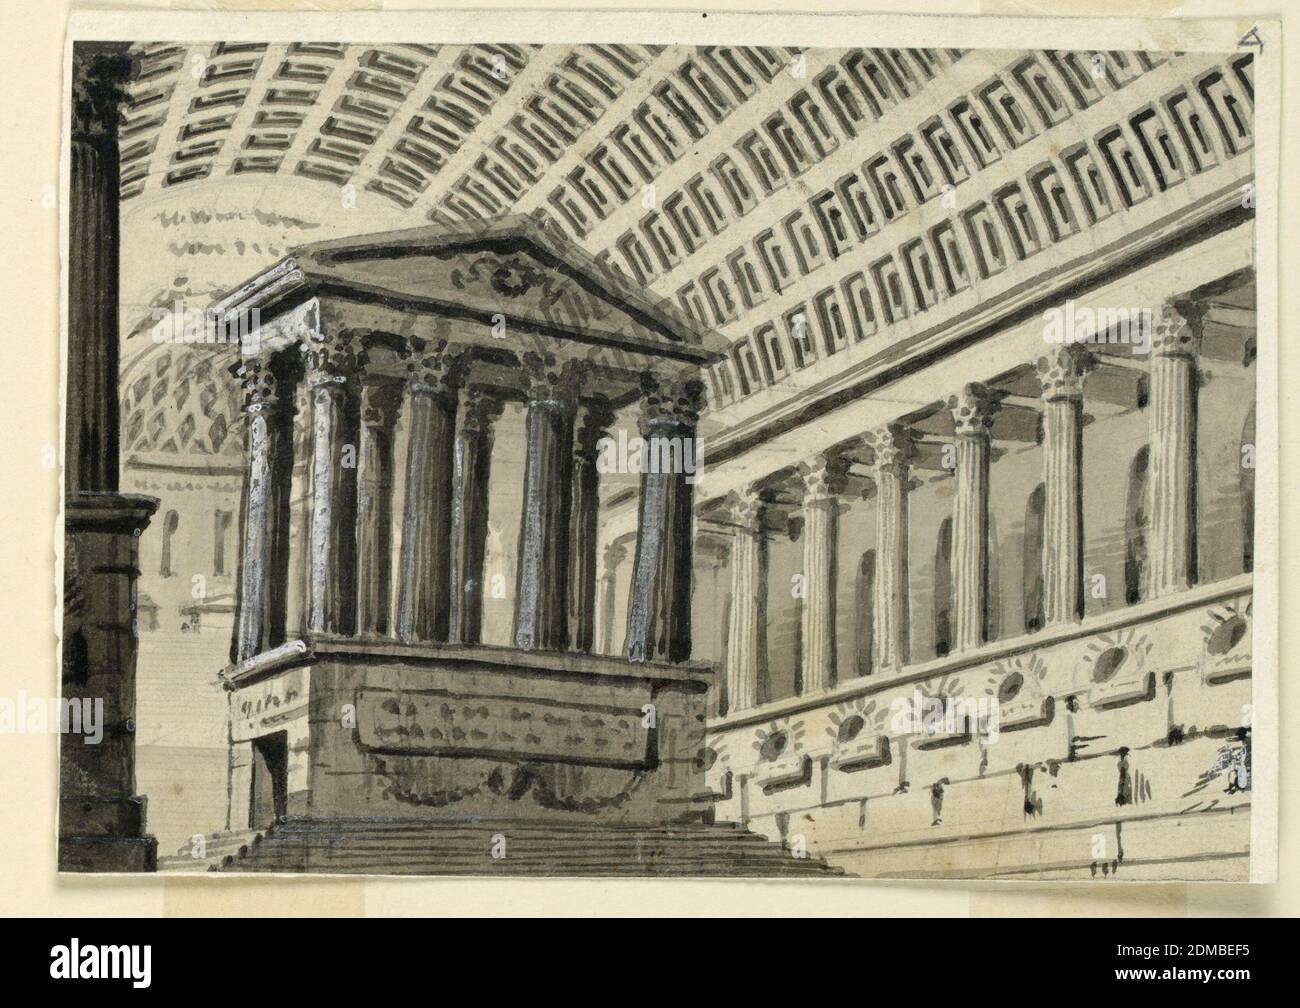 Bühnenbild, Innenraum eines Sepulchral-Saals, Angelo Toselli, ca. 1765? – 1826, Pinsel und grau, schwarz und weiß waschen, Graphit auf Papier, Horizontal Rechteck. Das Innere des riesigen Saales mit Sarkophagen, verziert mit einem Kassettengewölbe, in Richtung der Apsis gesehen, zu der Stufen führen. Die Halle hat ein Seitenschiff auf einer hohen Struktur und vom Hauptschiff durch Säulen getrennt. Im Hauptschiff steht ein Mausoleum., Bologna, Italien, 1815–30, Theater, Zeichnung Stockfoto